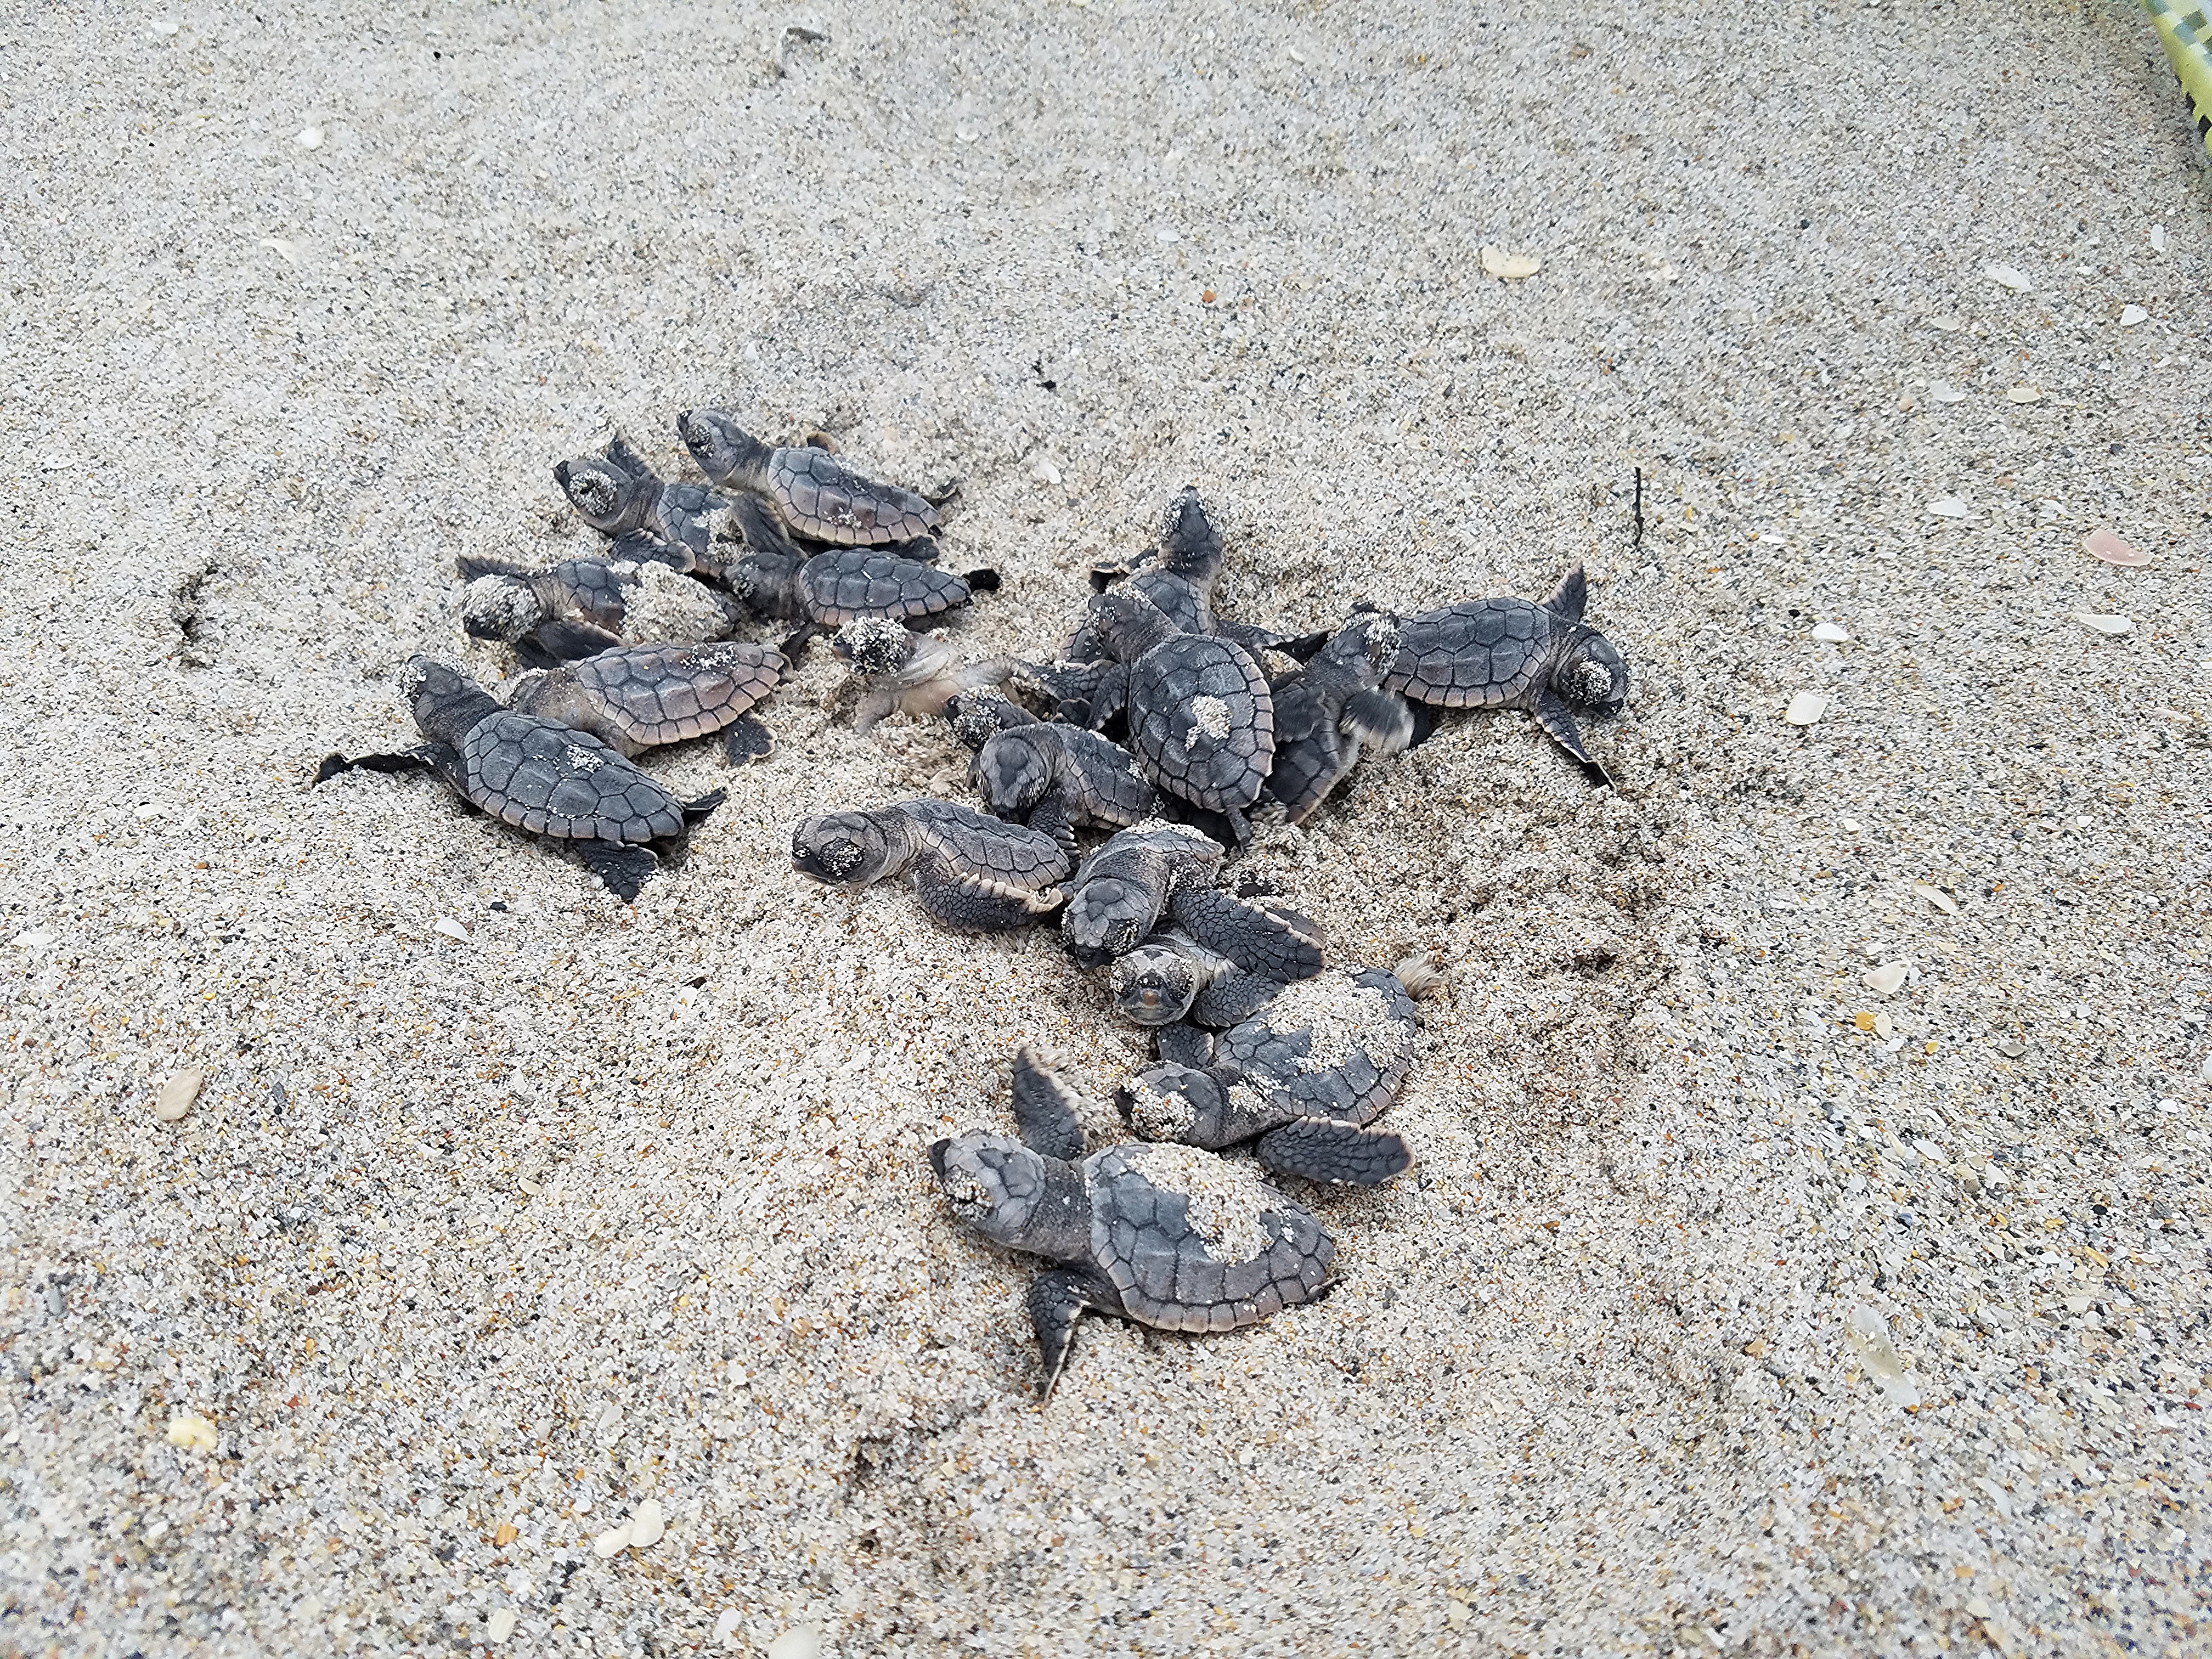 hatchling sea turtles.jpg